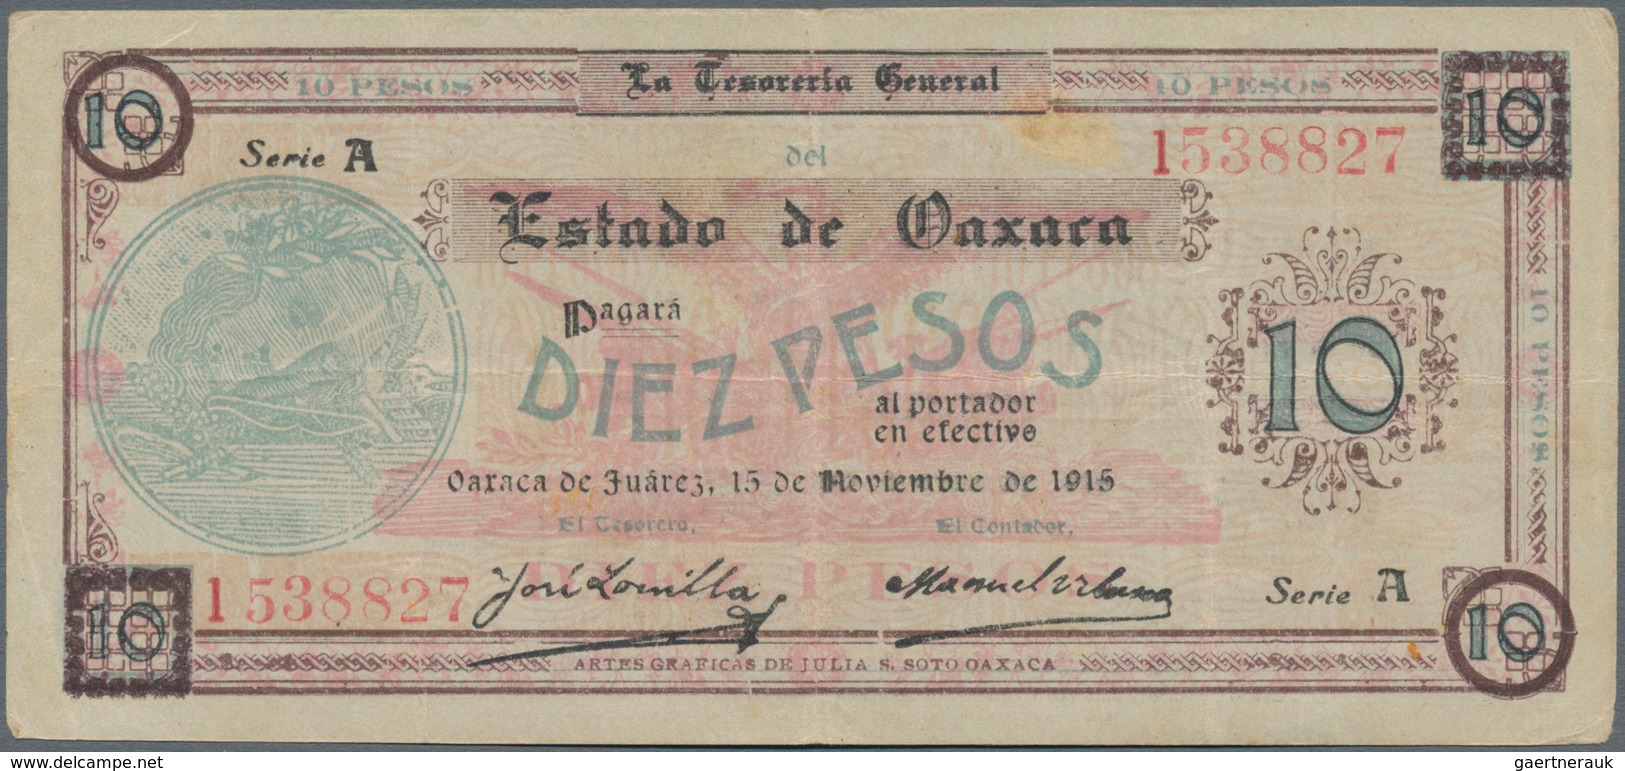 Mexico: Tesorería General Del Estado De Oaxaca 10 Pesos 1915, P.S957a In About XF Condition. - Mexico